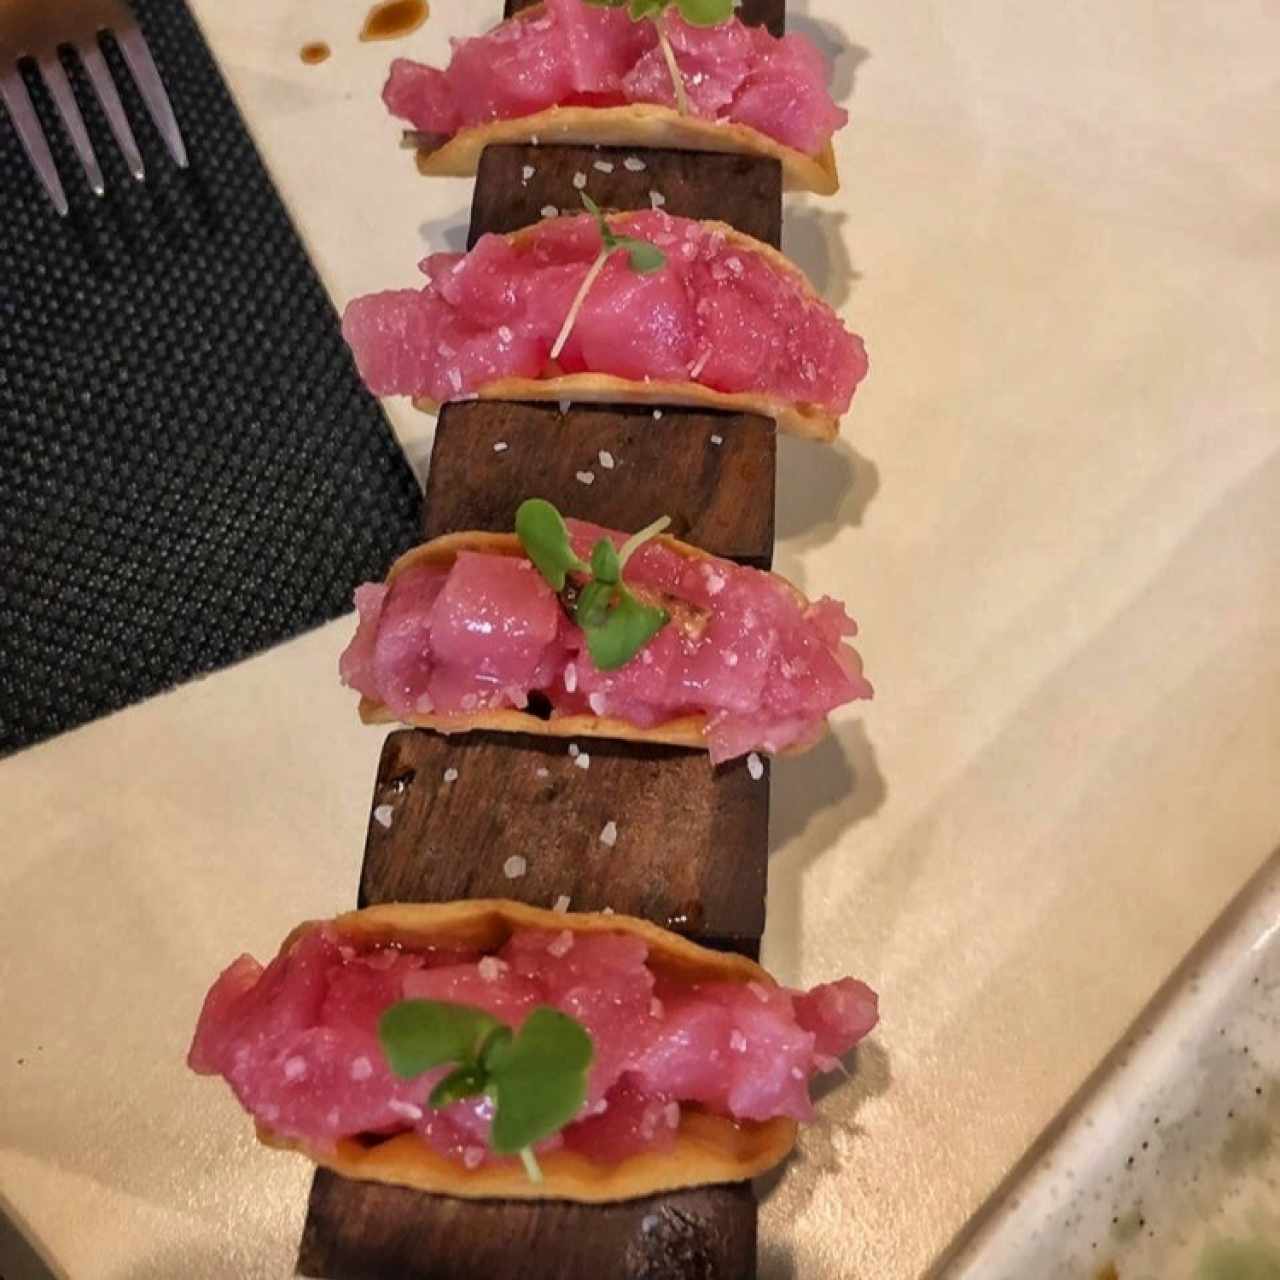 Tuna Taco